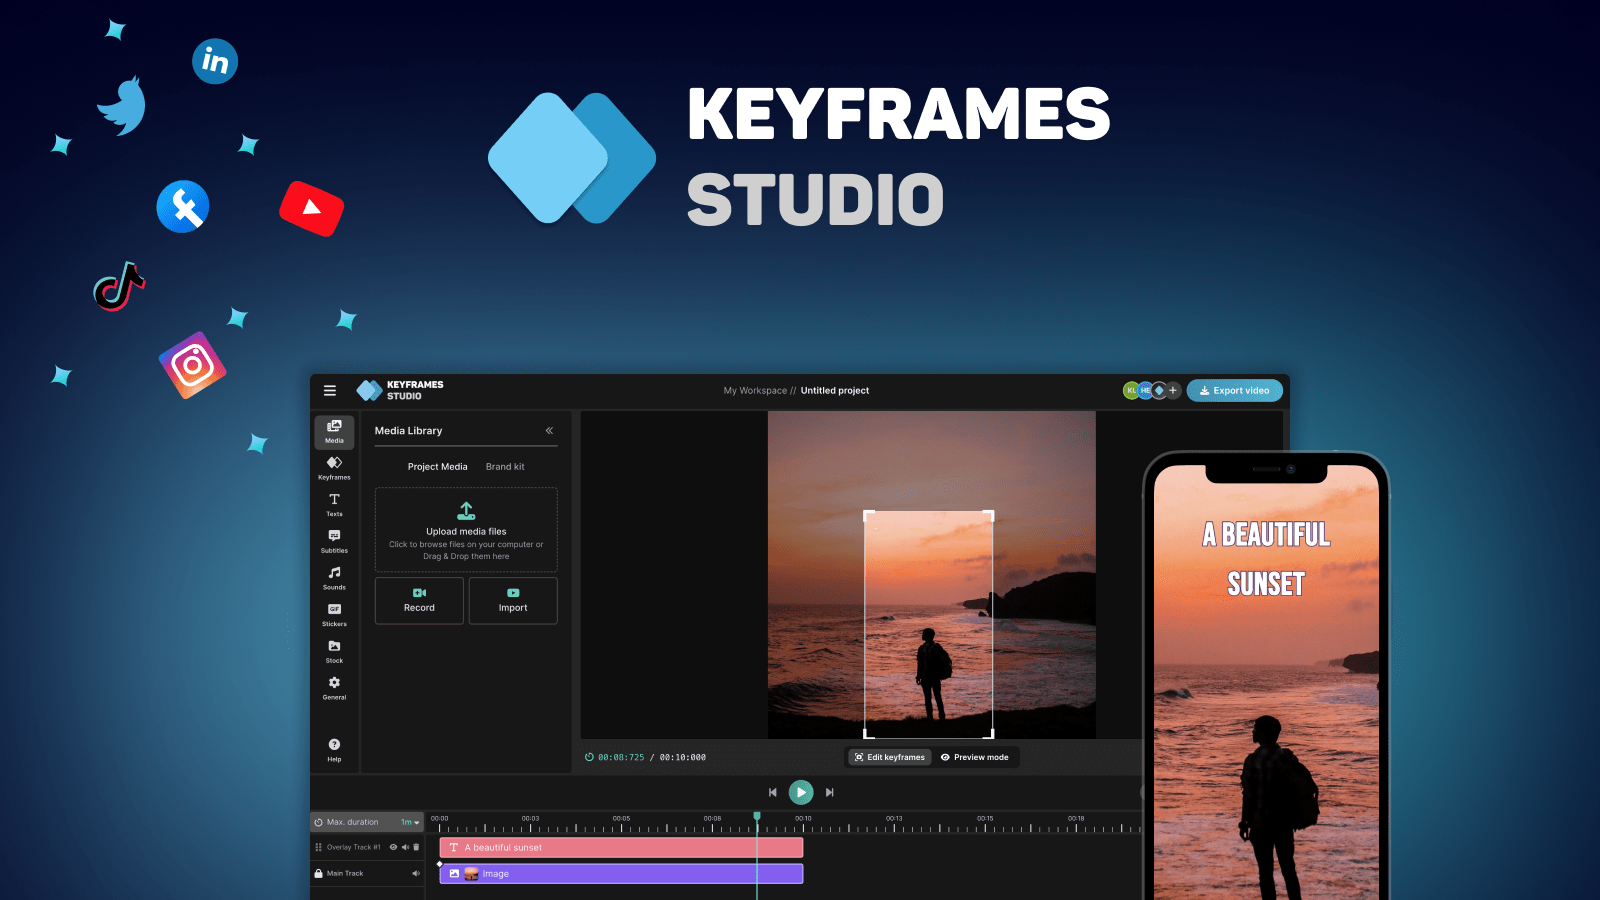 keyframes.studio-ソーシャルメディアでビデオを作成、編集、共有するためのオールインワンビデオ編集プラットフォーム